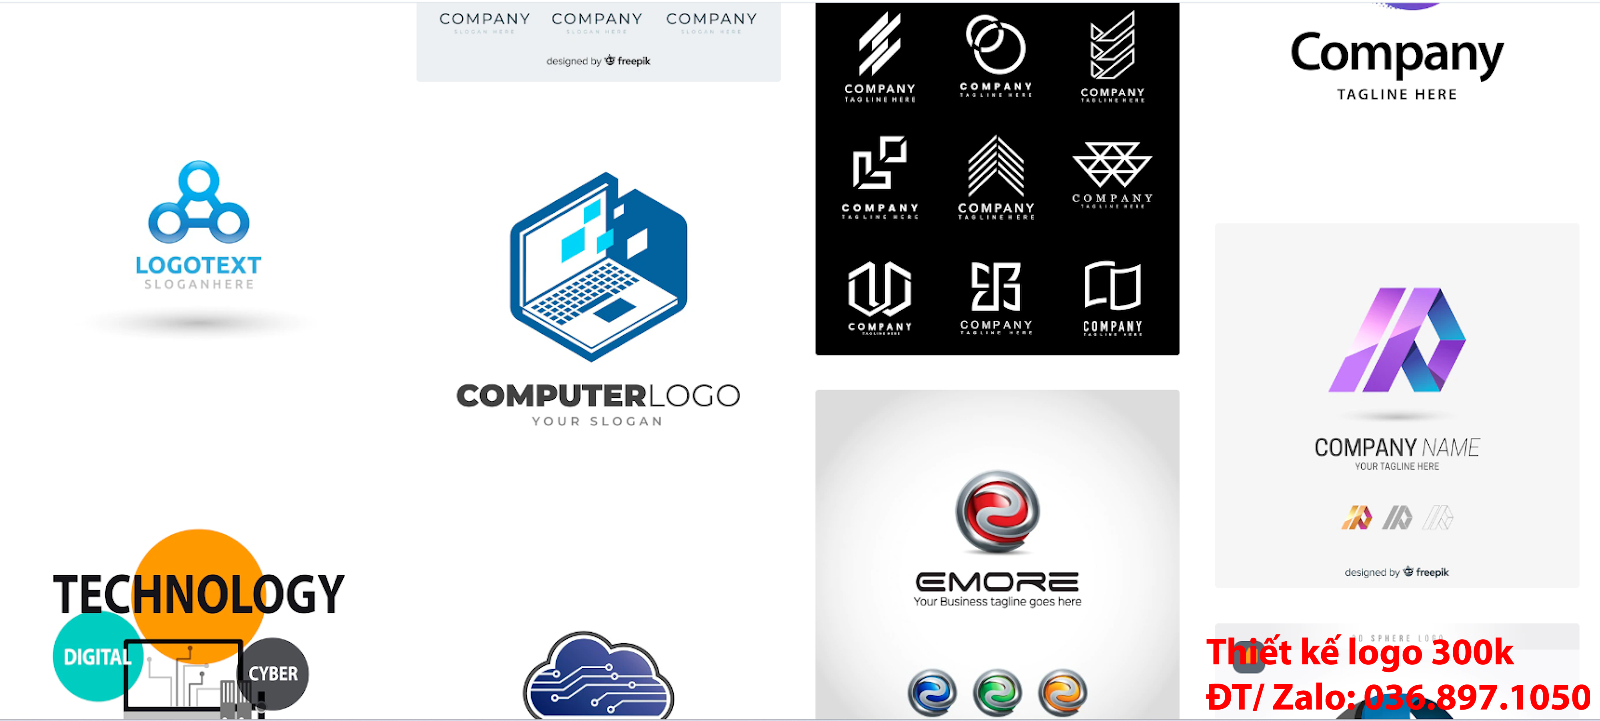 Dịch vụ làm logo công ty công nghệ chuyên nghiệp đẹp online uy tín giá 300k